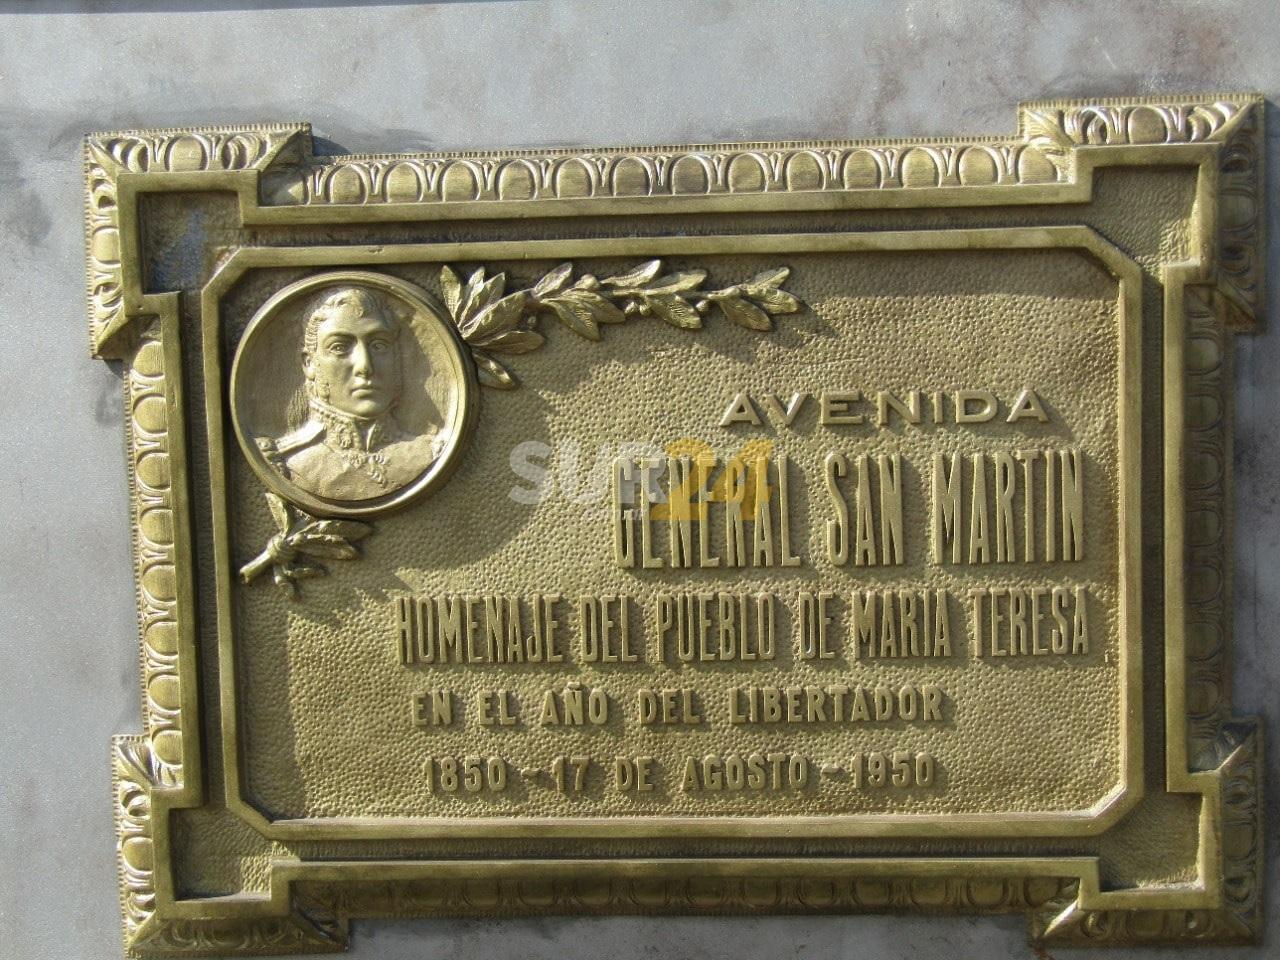 María Teresa rescató y restauró placa del Centenario de la muerte de San Martín